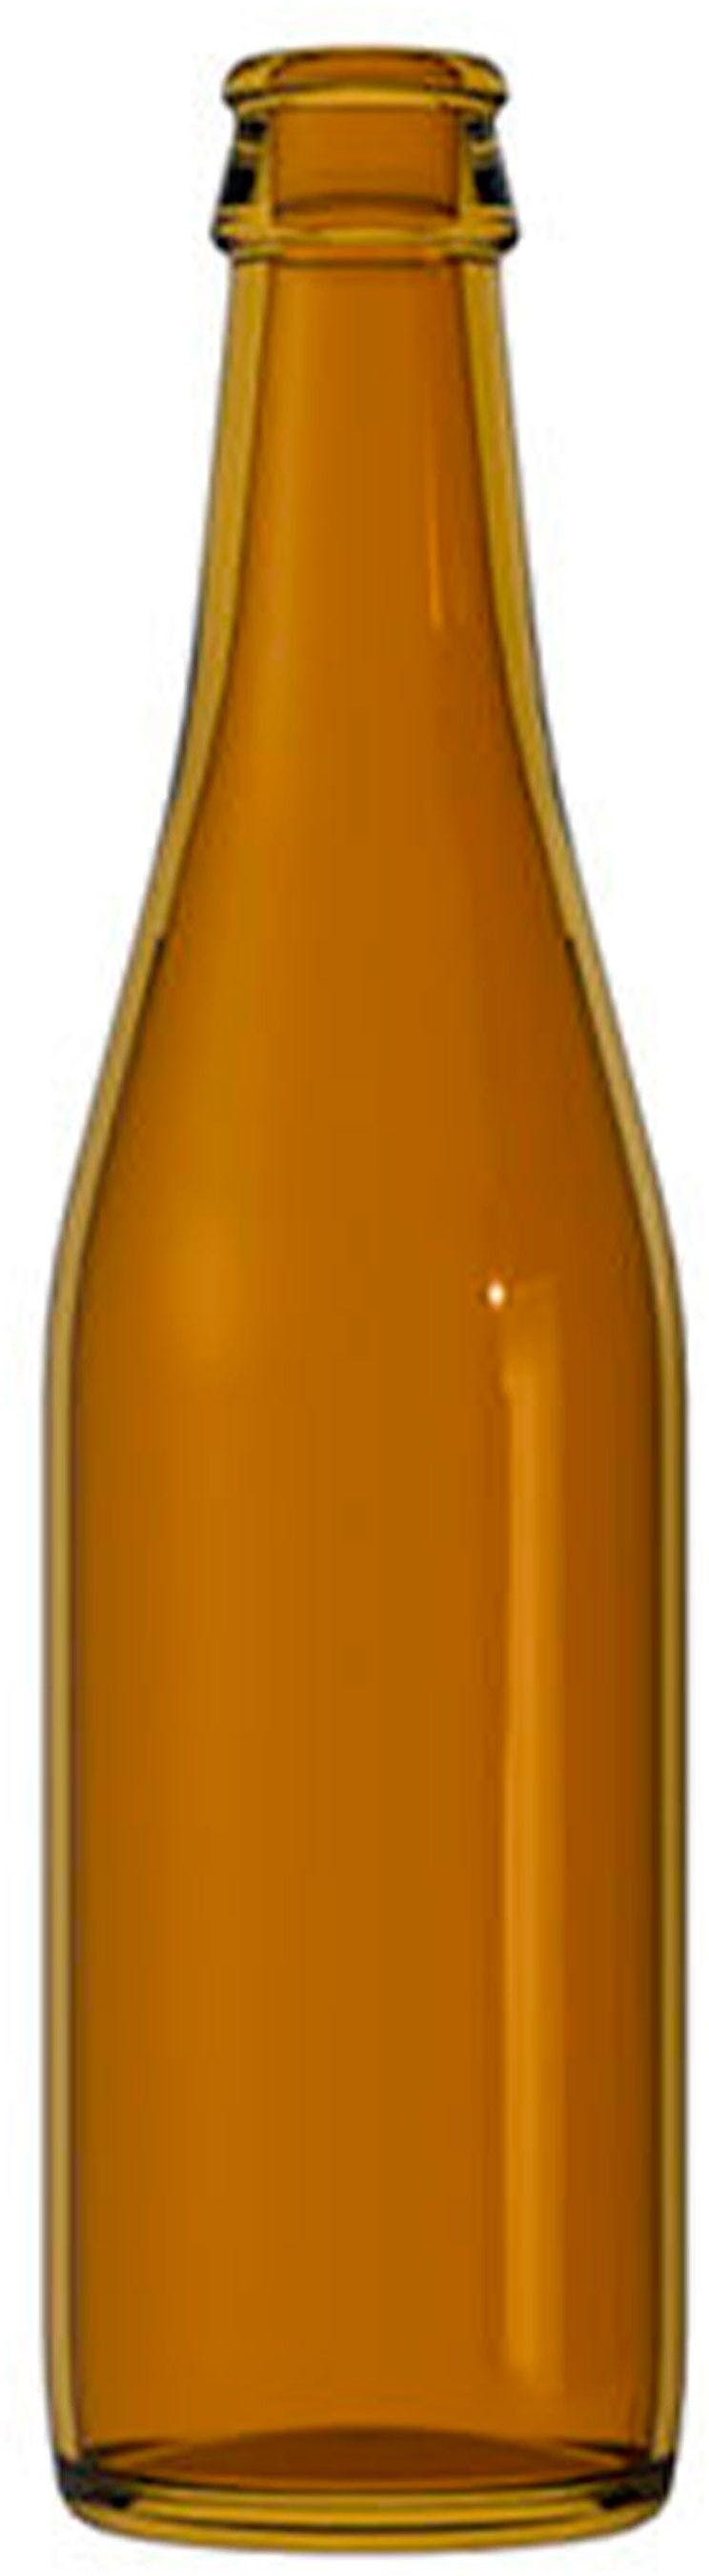 Flasche BIRRA  VICHY 330 ml Kronkorken 26